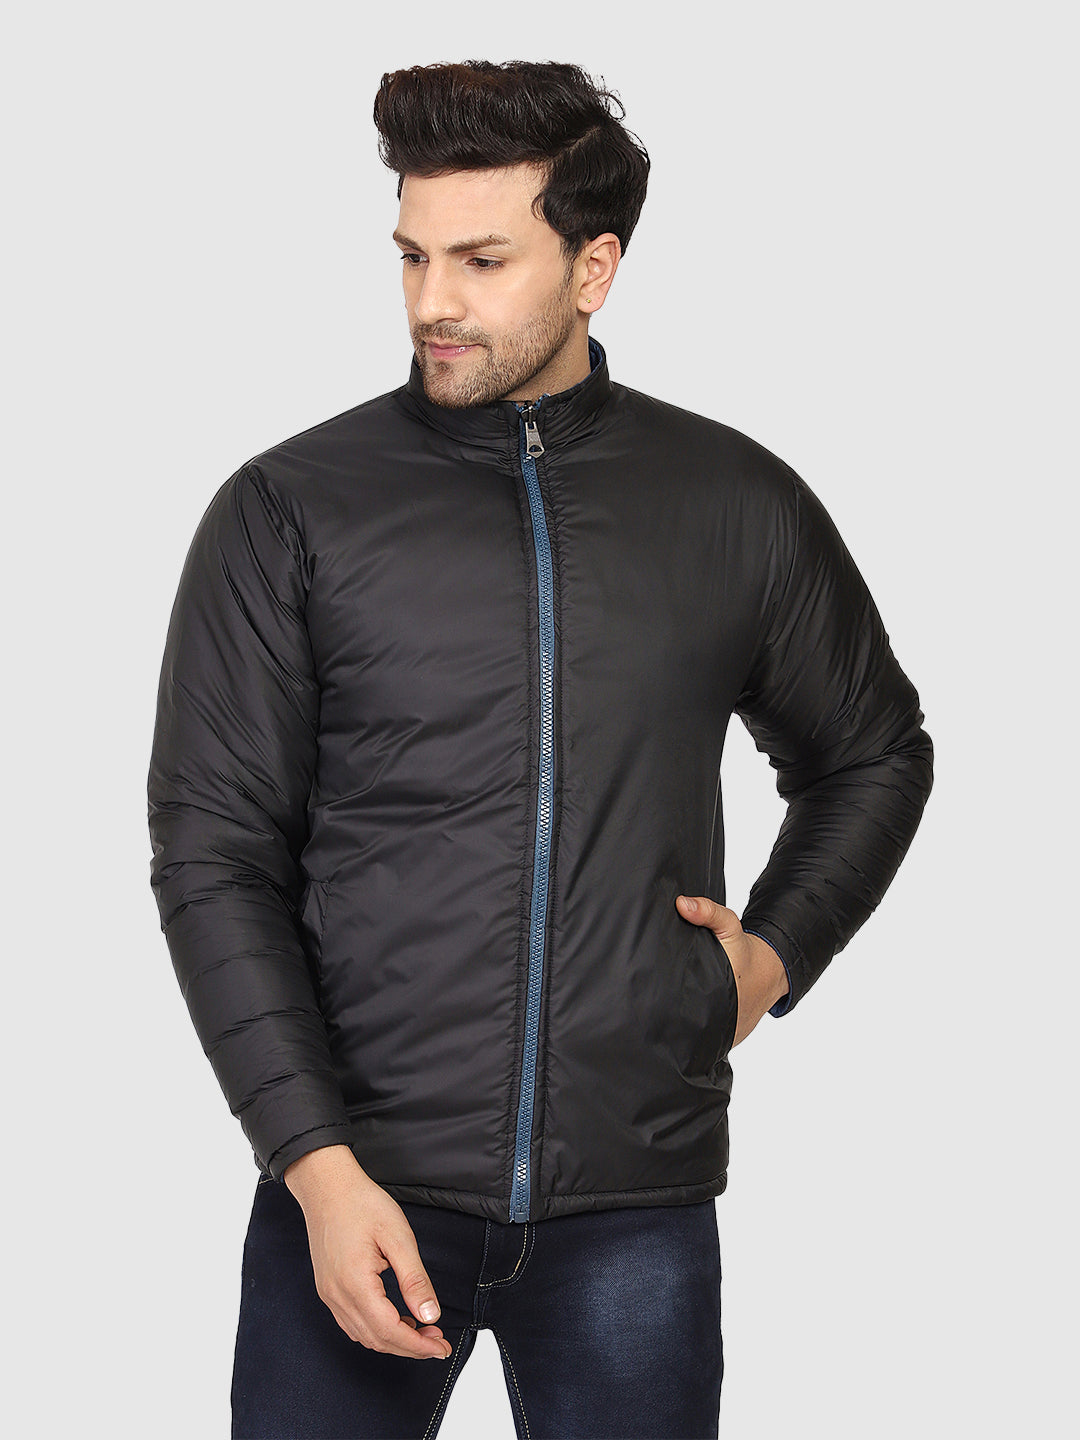 Full-Sleeves Reversible Jacket For Men